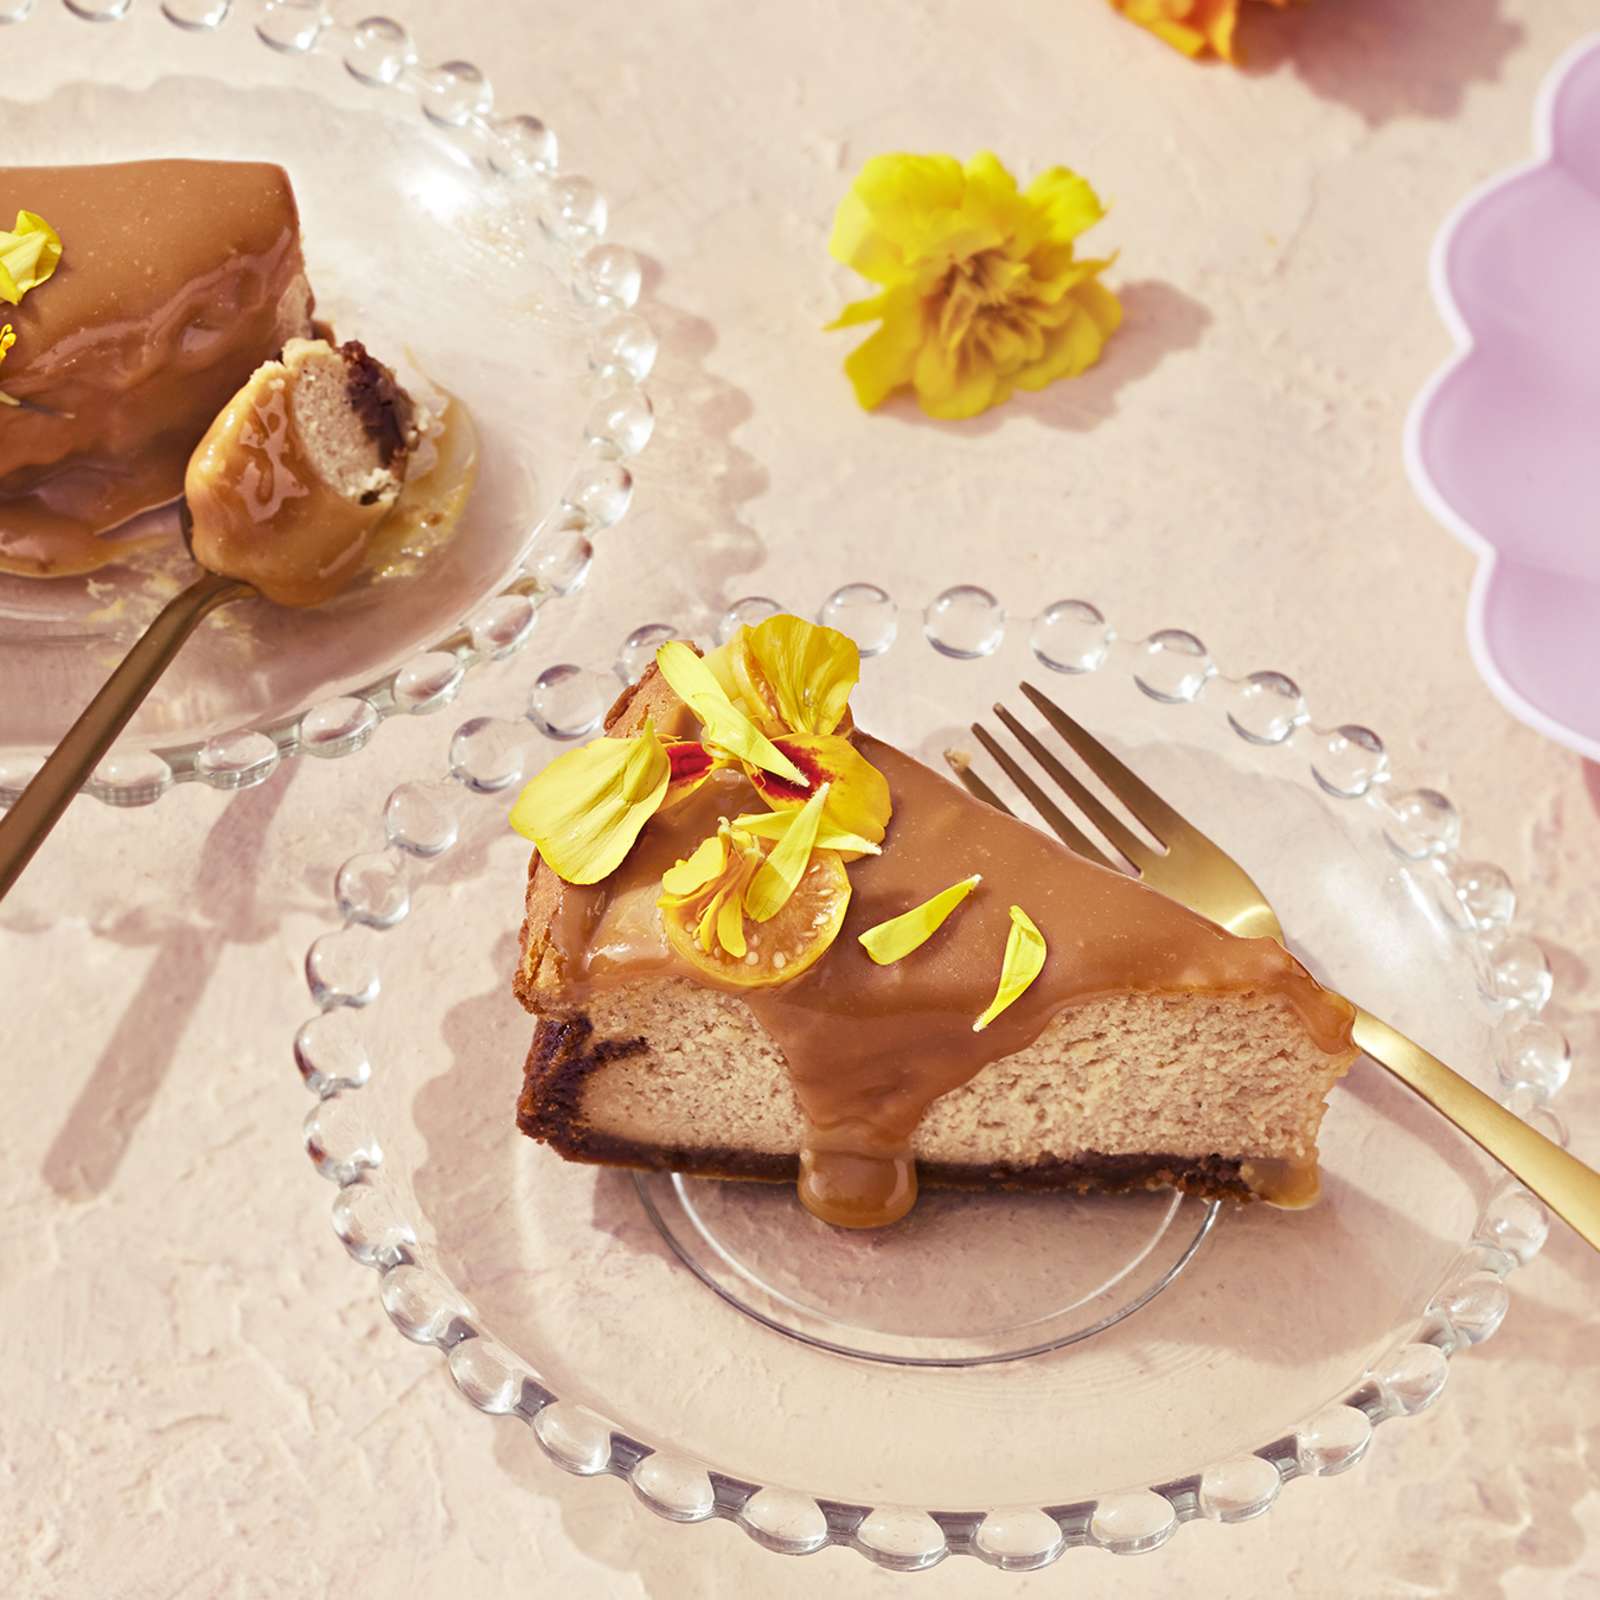 Suolakinuski-juustokakku, josta leikattu kaksi palaa lasisille lautasille. Kakkupalat koristeltu keltaisilla samettikukilla.